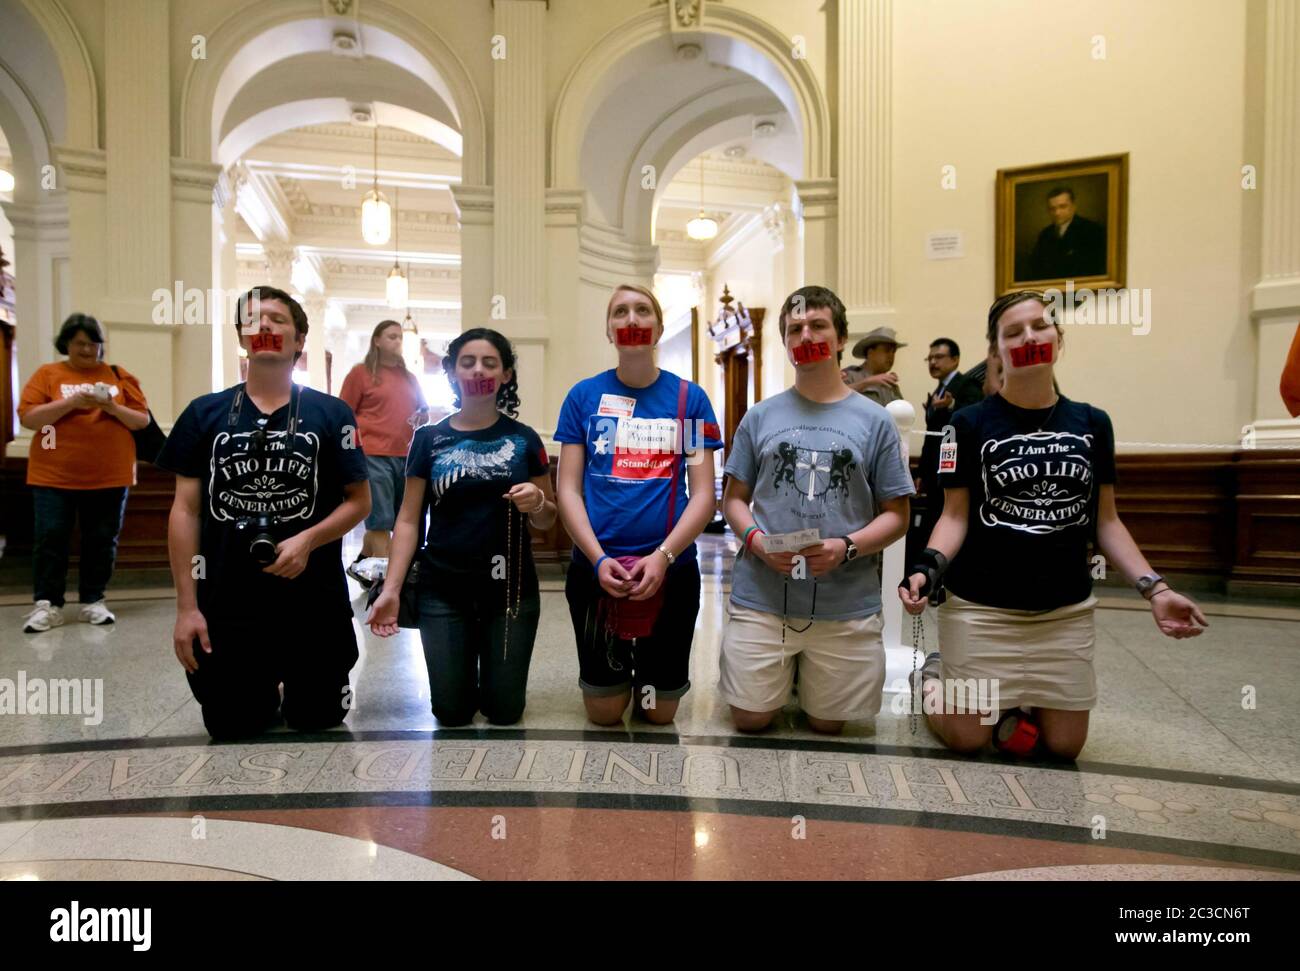 11 de julio de 2013 Austin, Texas, EE.UU.: Los opositores al aborto, arrodillados y con la palabra 'vida' grabada en la boca, oran durante una manifestación pro-vida en el Capitolio de Texas. Cientos de partidarios pro-vida y pro-derecho se amontonaron en el edificio mientras los senadores estatales debatían HB2, una polémica ley que impone restricciones más estrictas al acceso de las mujeres al aborto. El proyecto de ley fue aprobado con un voto de 19-11, con los 18 republicanos y 1 demócratas votando sí. Más temprano en la sesión, la filibustera de la Senadora Wendy Davis retrasó la acción sobre el proyecto de ley. ©Marjorie Kamys Cotera/ Daemmrich Photography Foto de stock